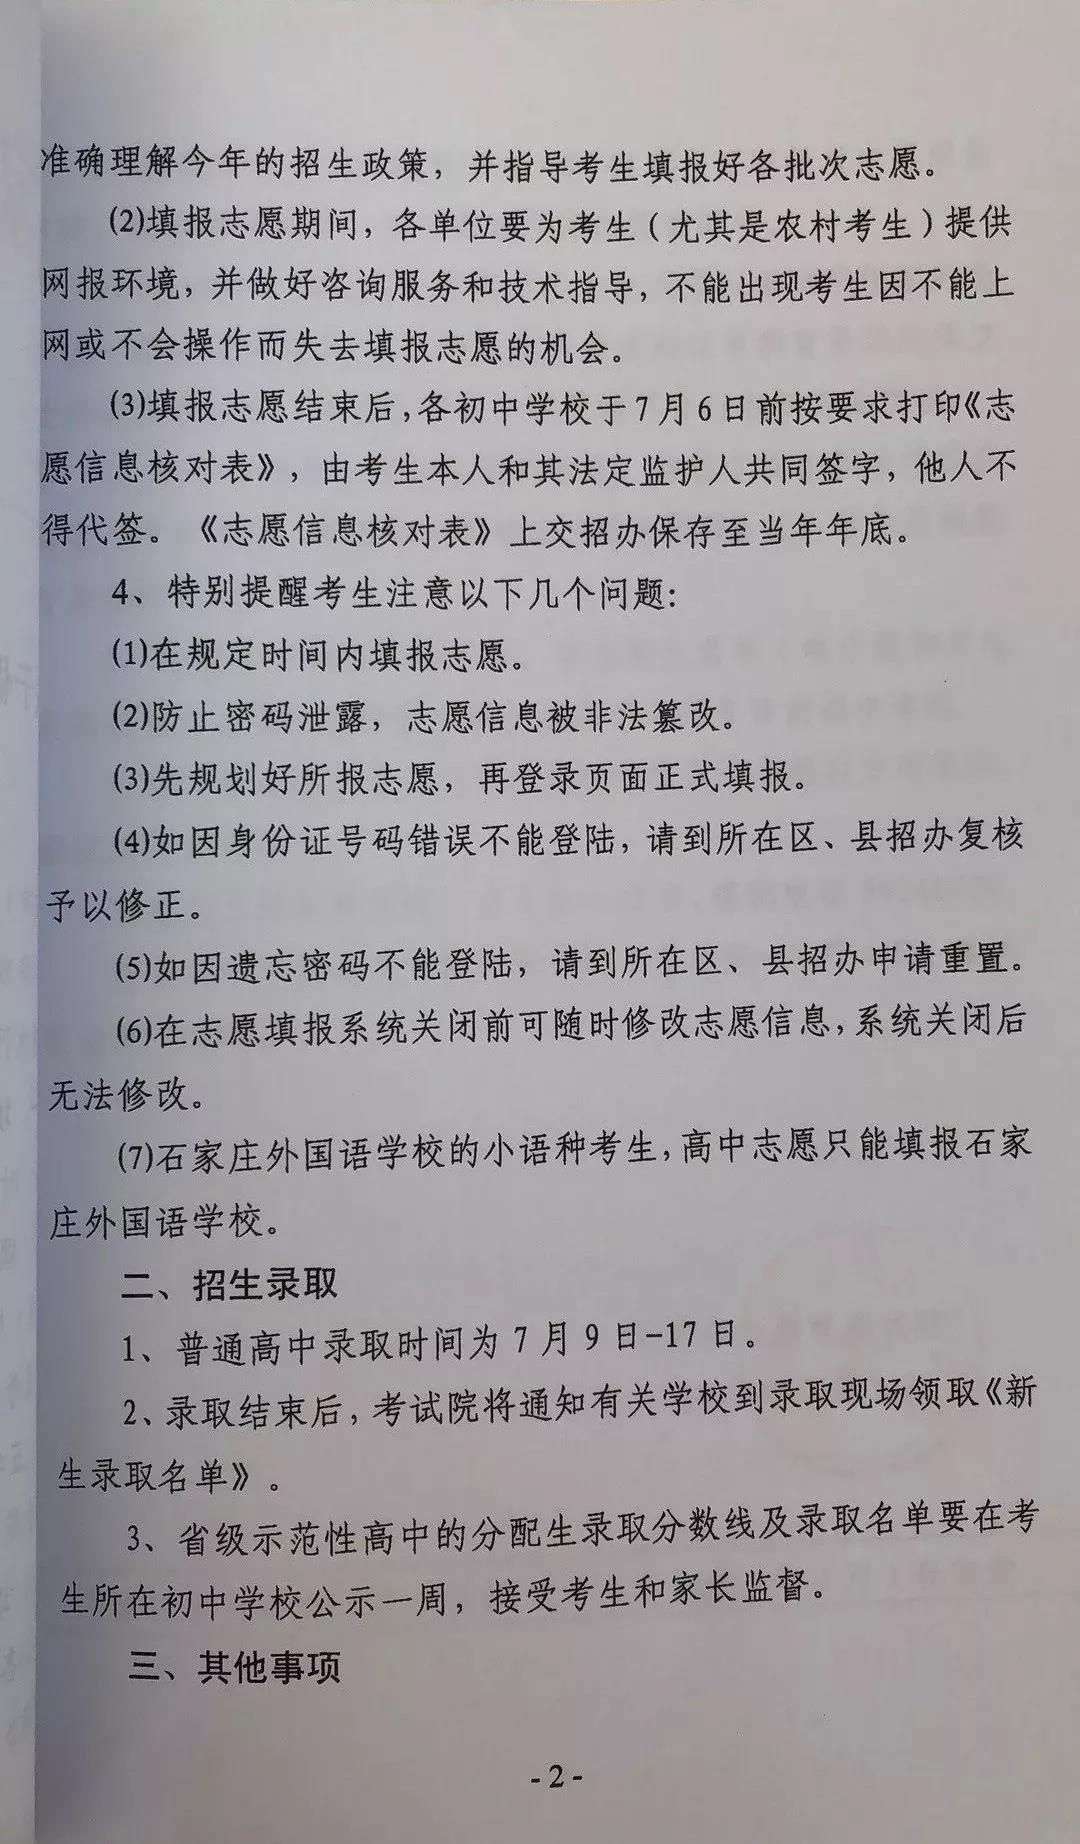 2019年河北石家庄中考志愿填报及招生录取通知